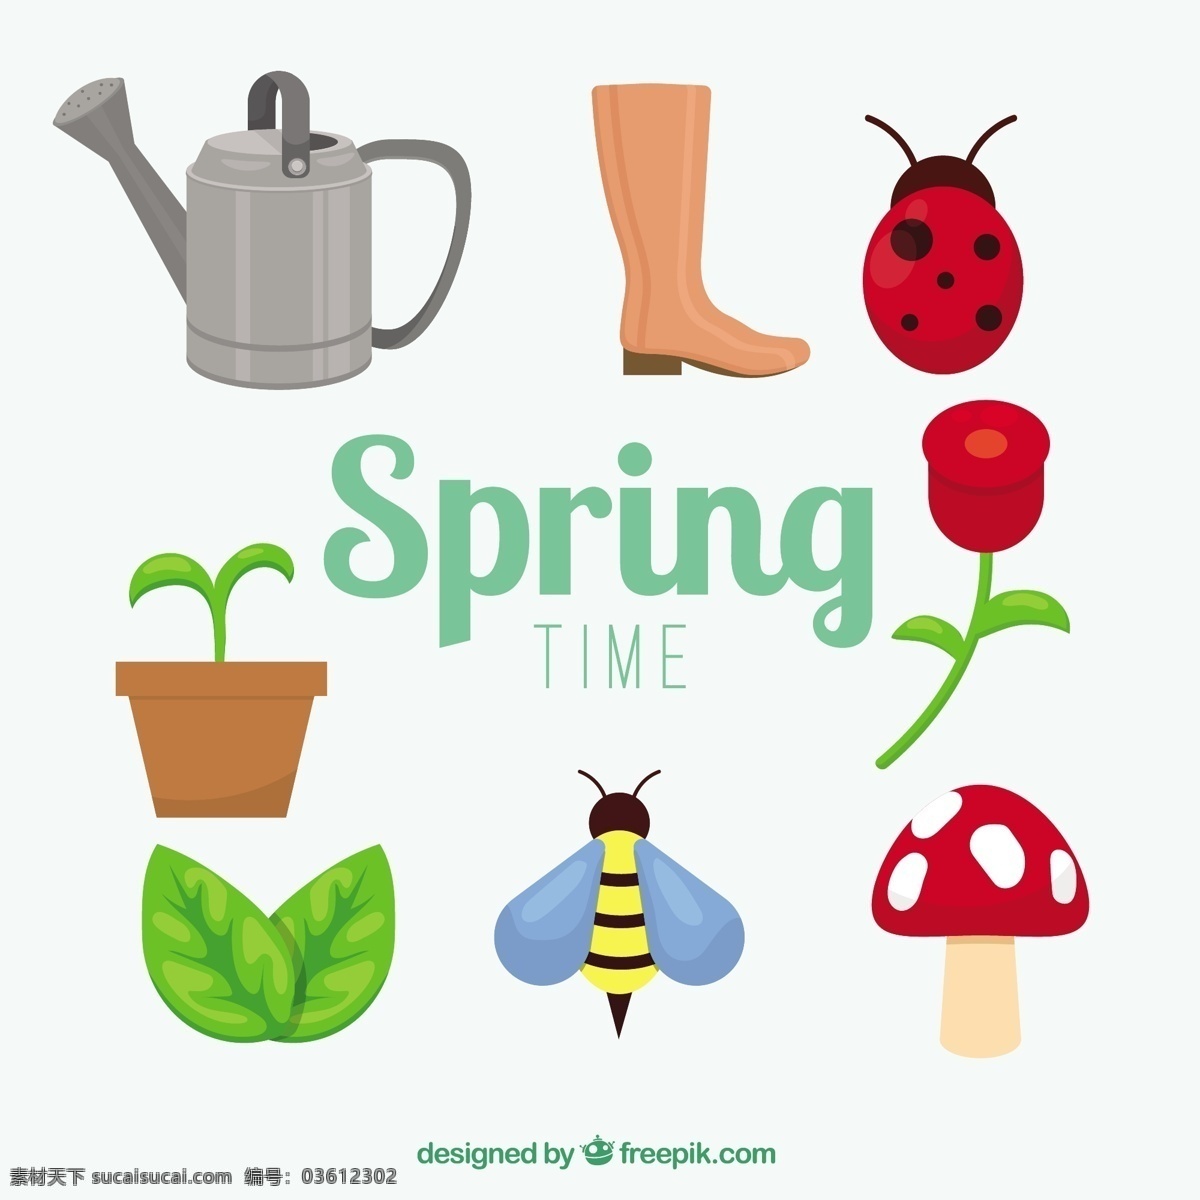 春图集合 花 手 弹簧 手绘 蜜蜂 树叶 绘图 元素 蘑菇 瓢虫 春天的花朵 靴子 抽的季节 喷壶 花盆 收集 春天 白色